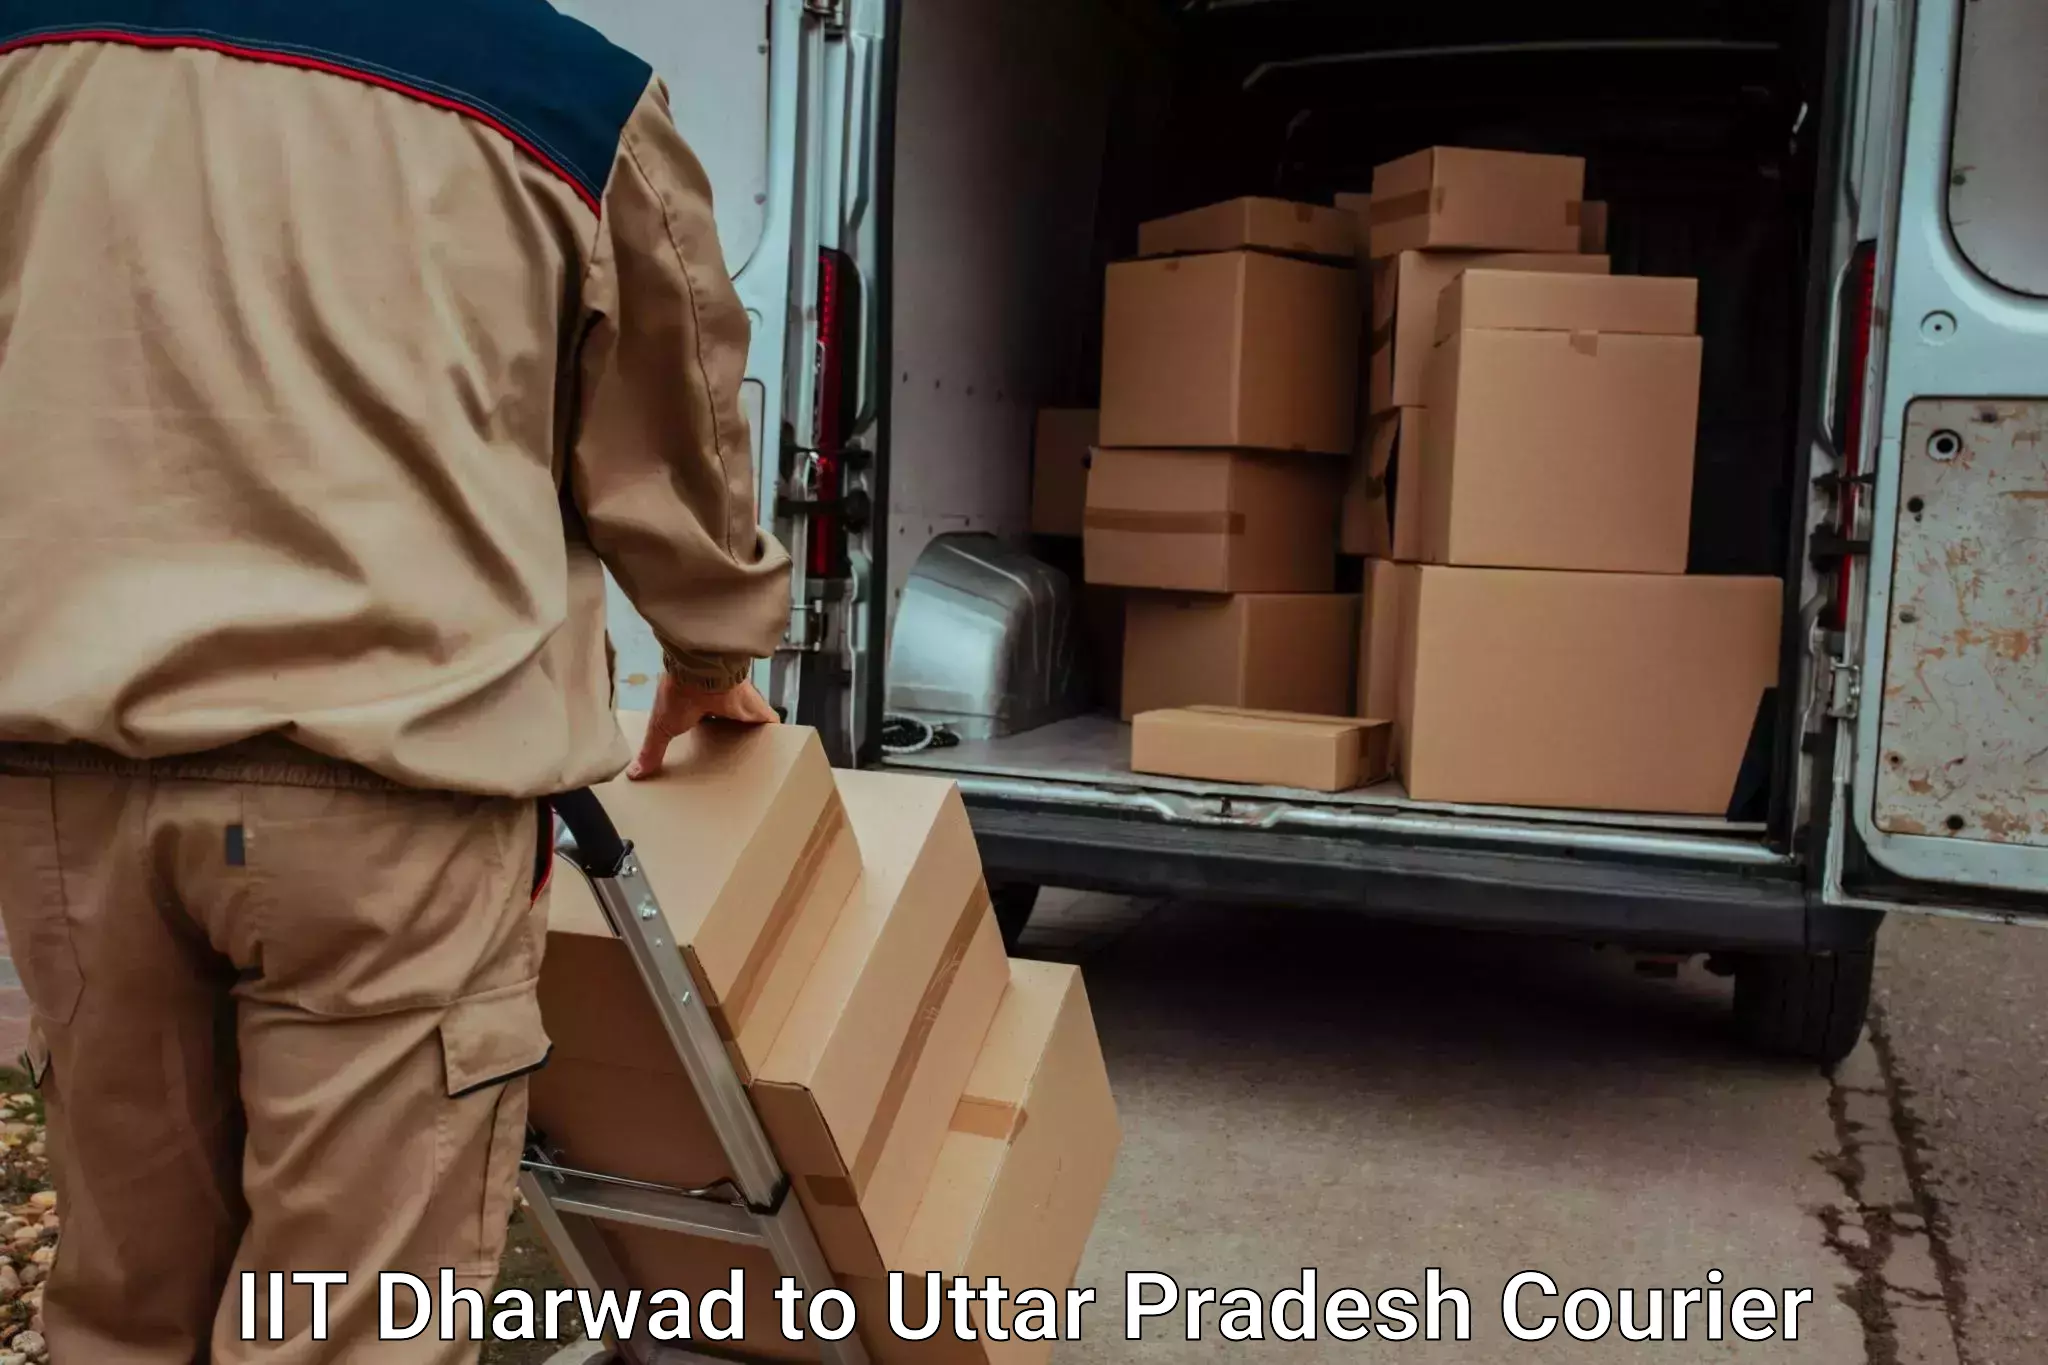 Emergency baggage service IIT Dharwad to Deoband